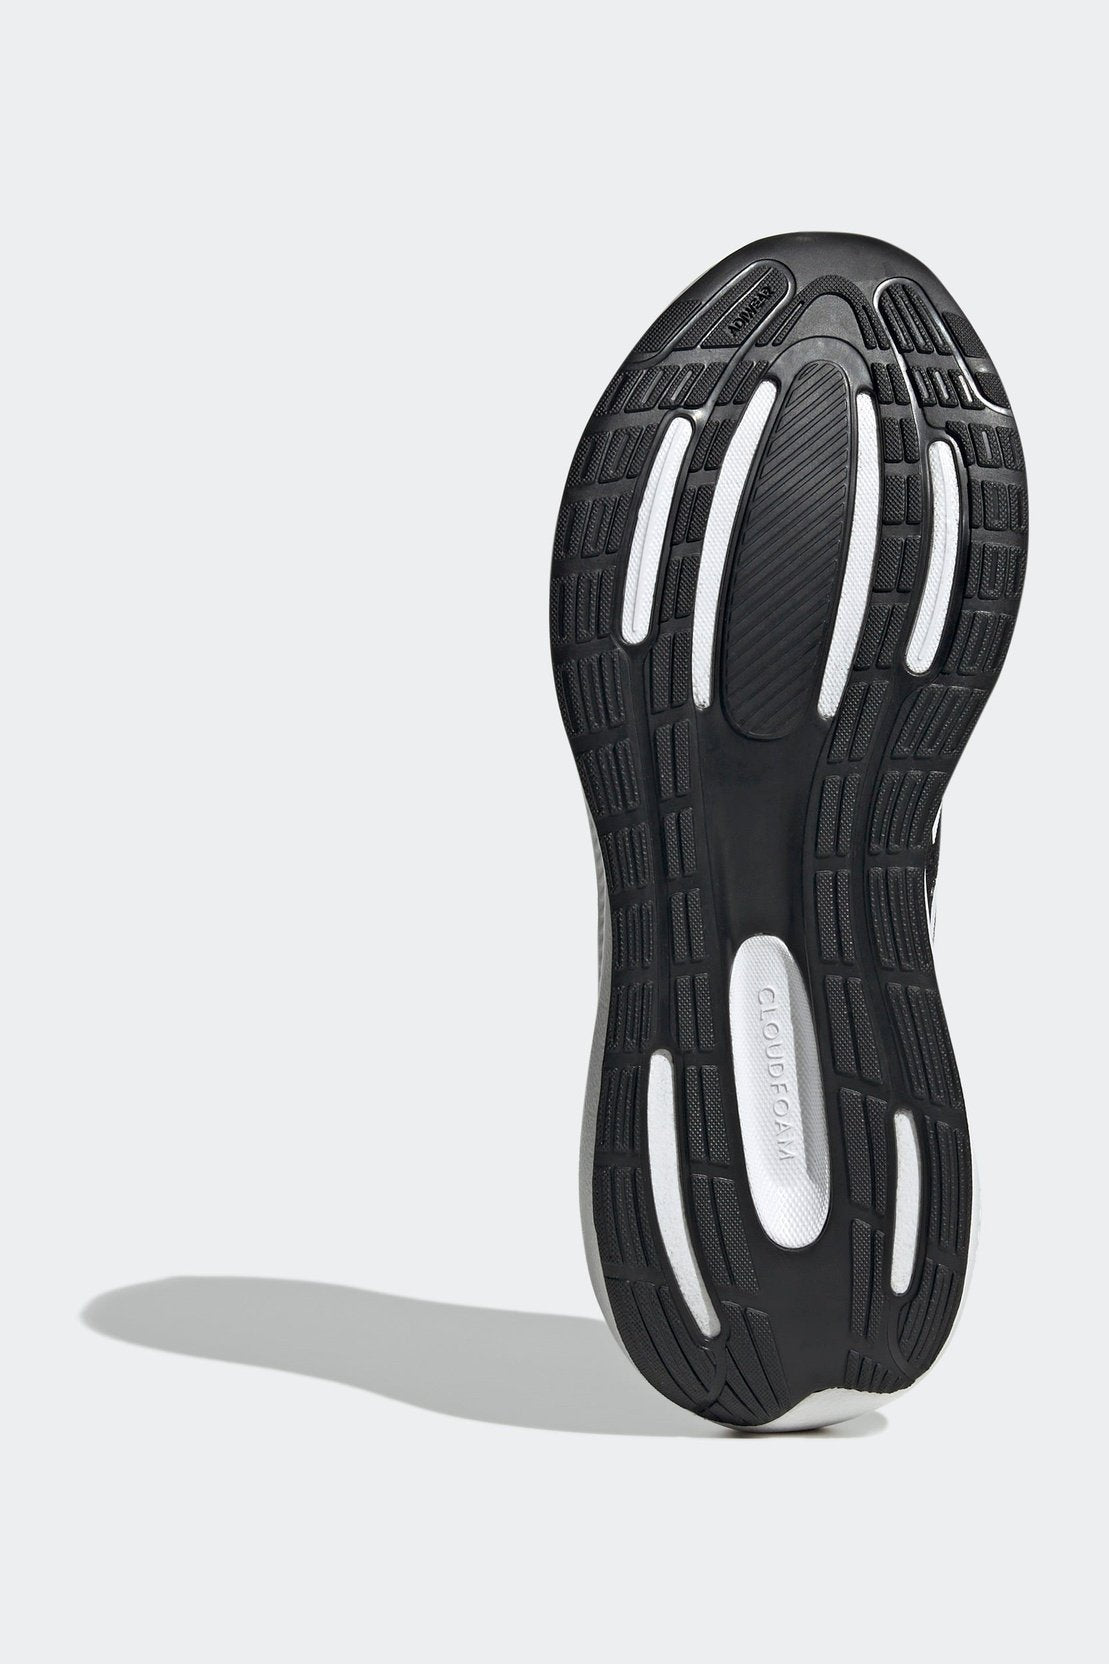 נעלי ספורט לנשים RUNFALCON WIDE 3 בצבע שחור ולבן